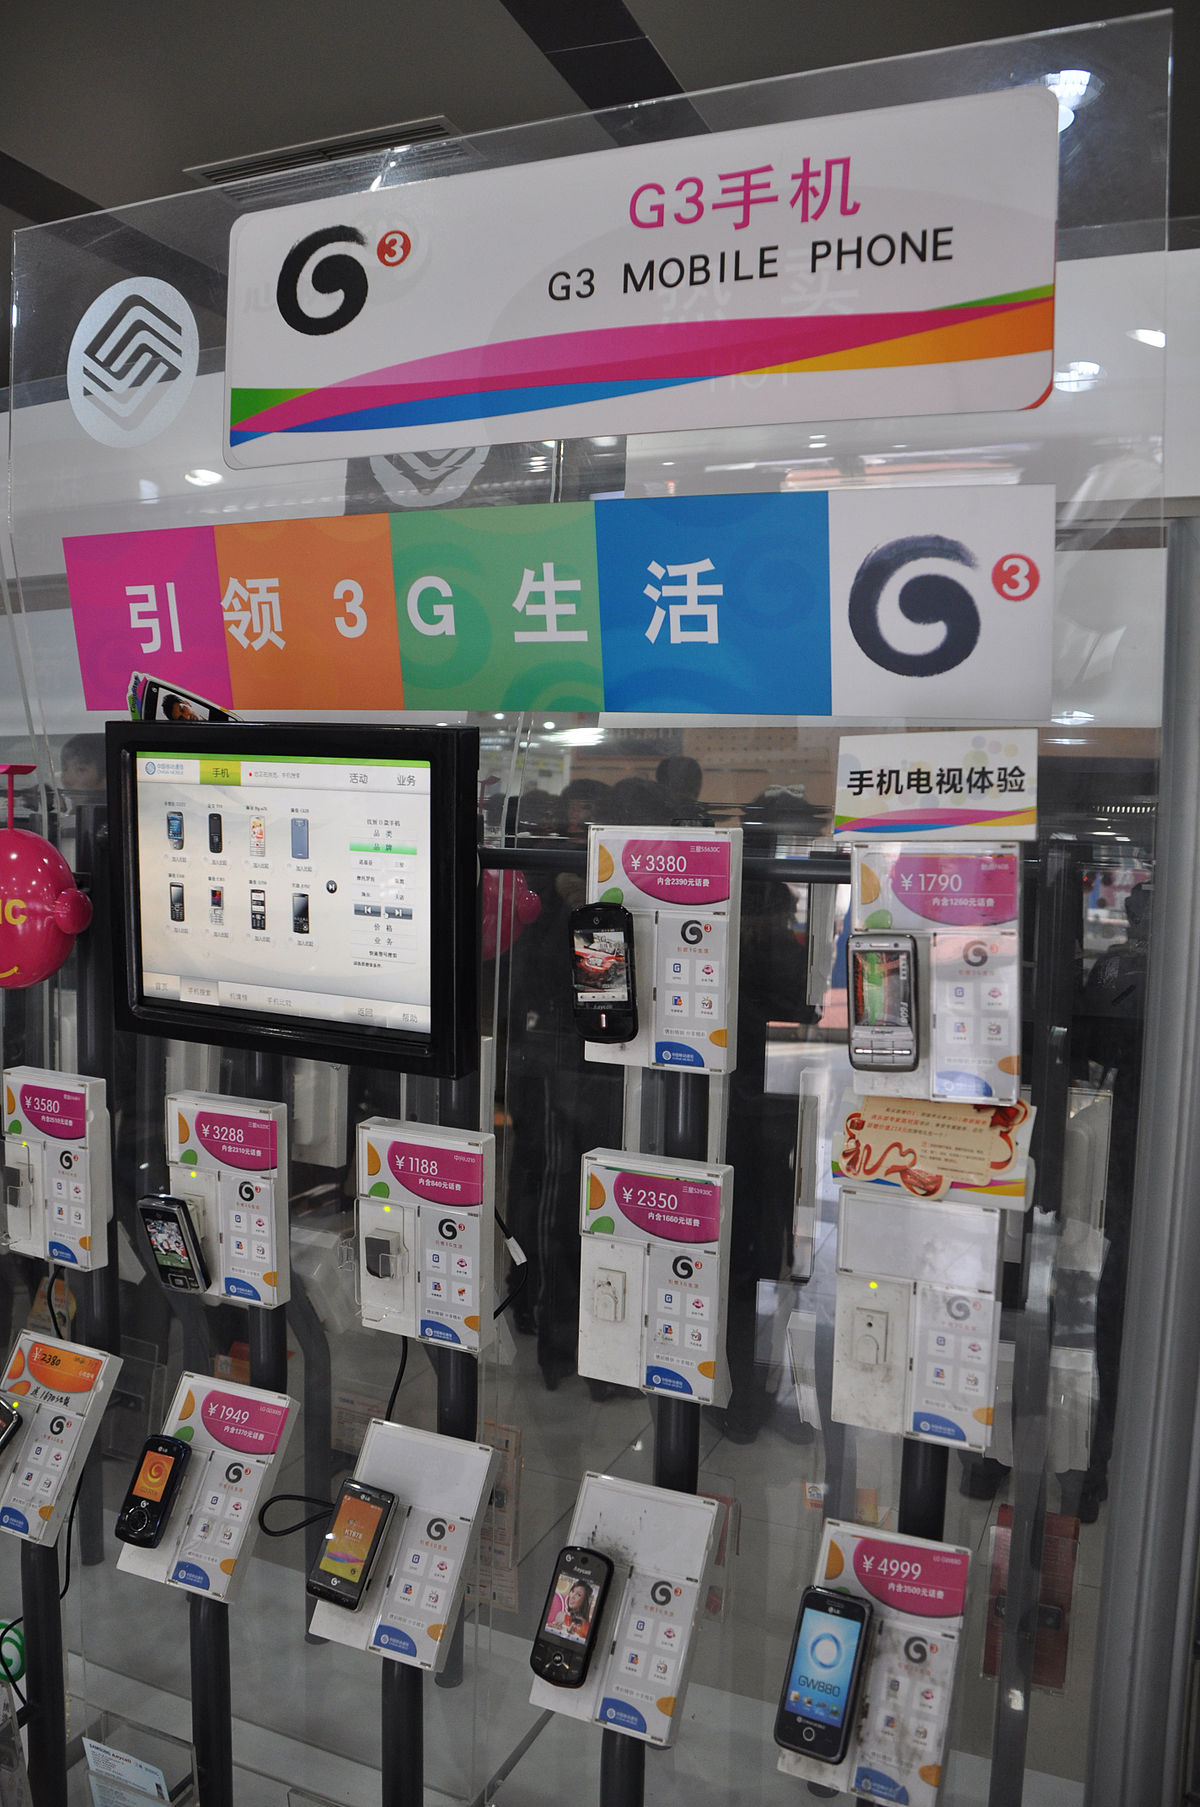 Mayorista china accesorios telefonia movil informatica venta por mayor